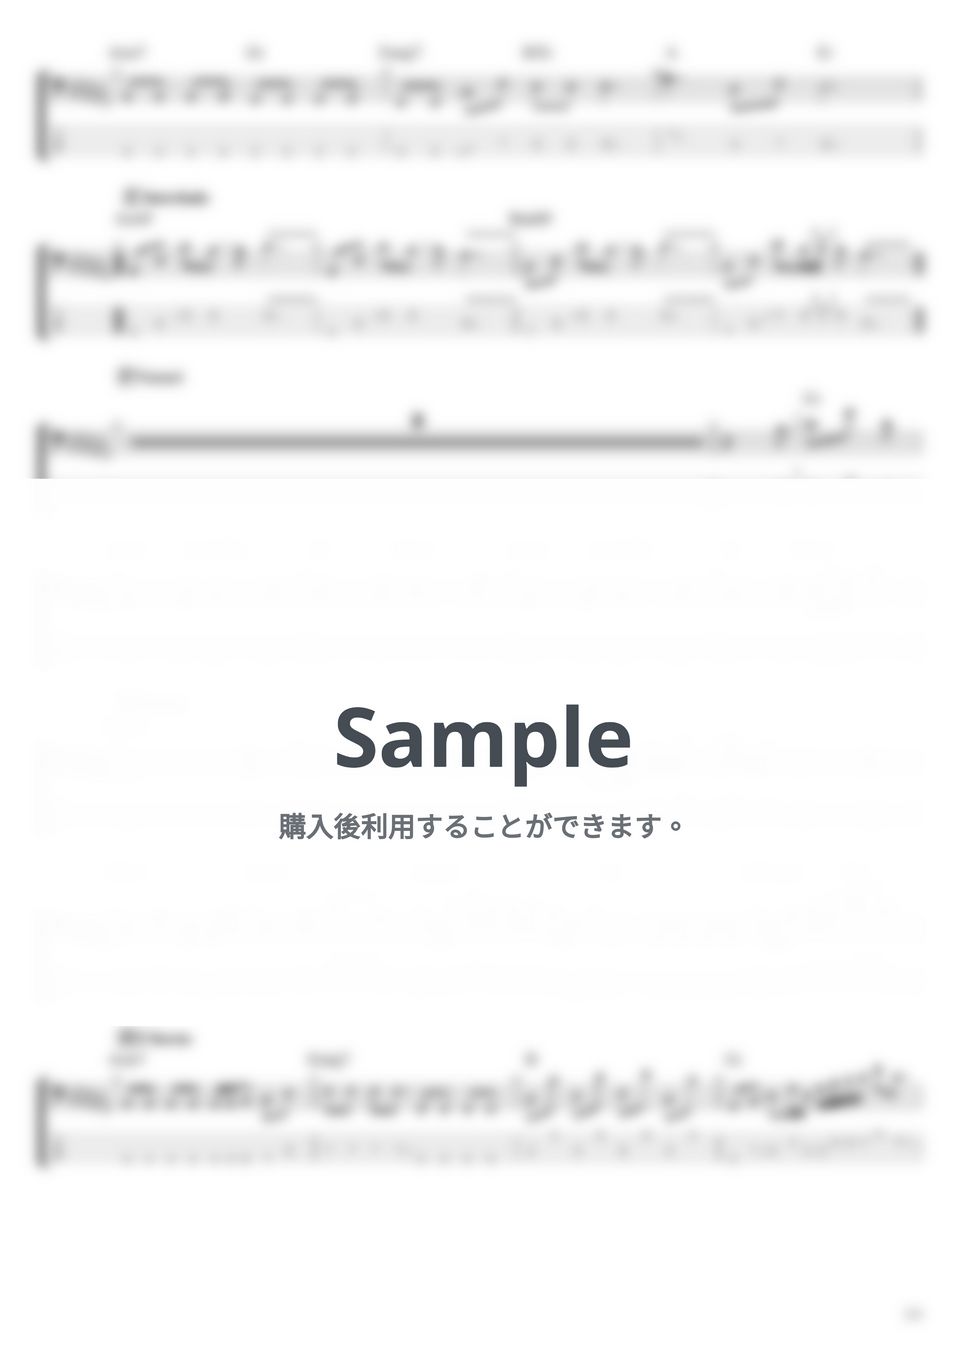 天野月子 - 蝶 (ベース Tab譜 4弦) by T's bass score